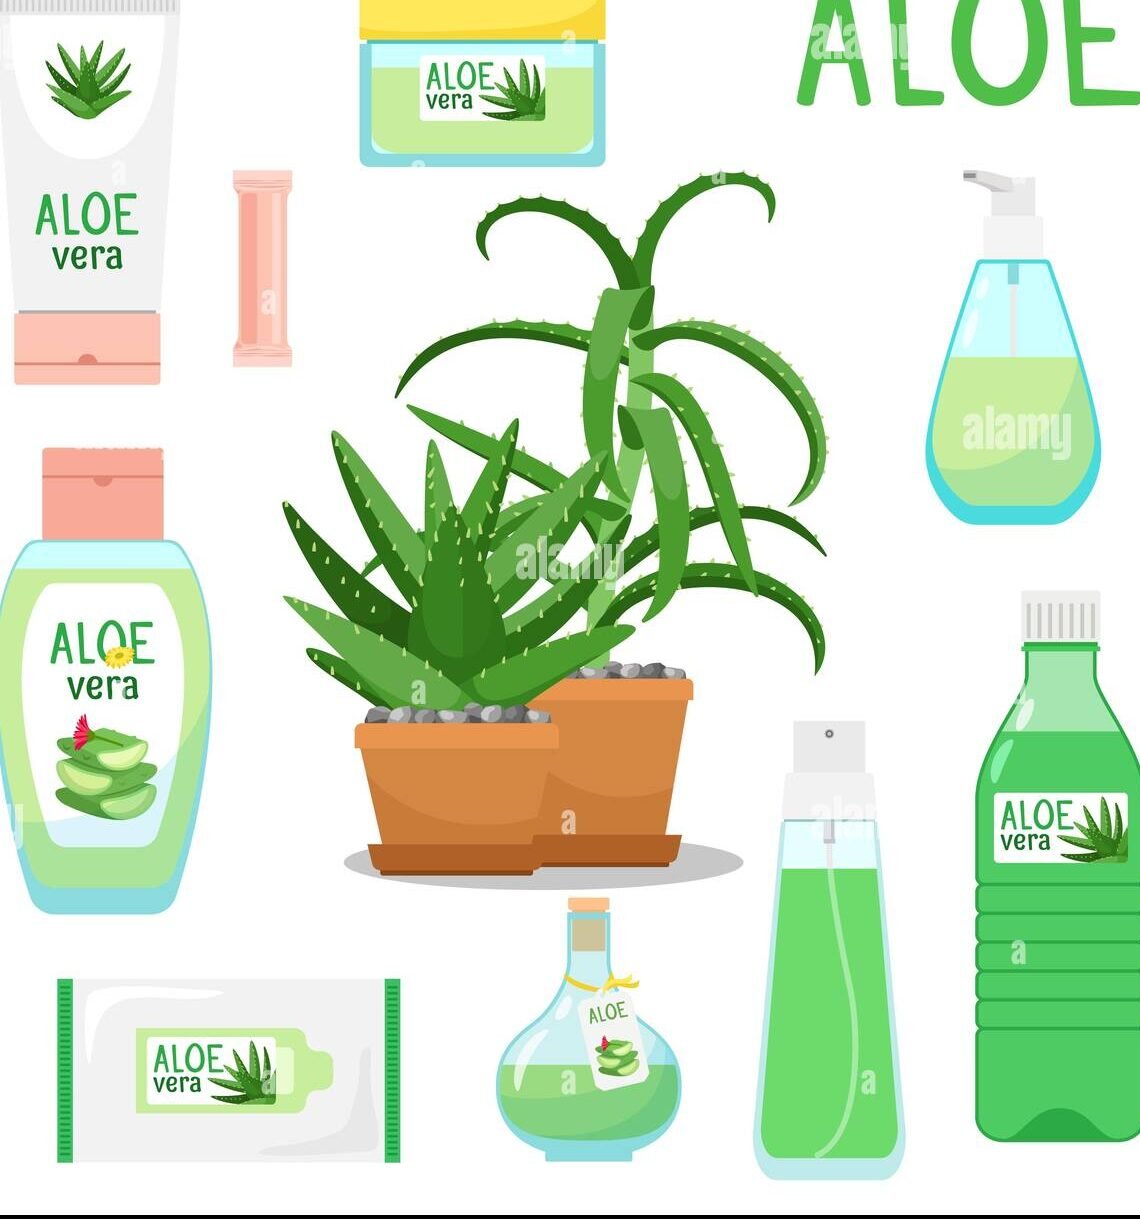 Is Aloe-vera farming profitable?